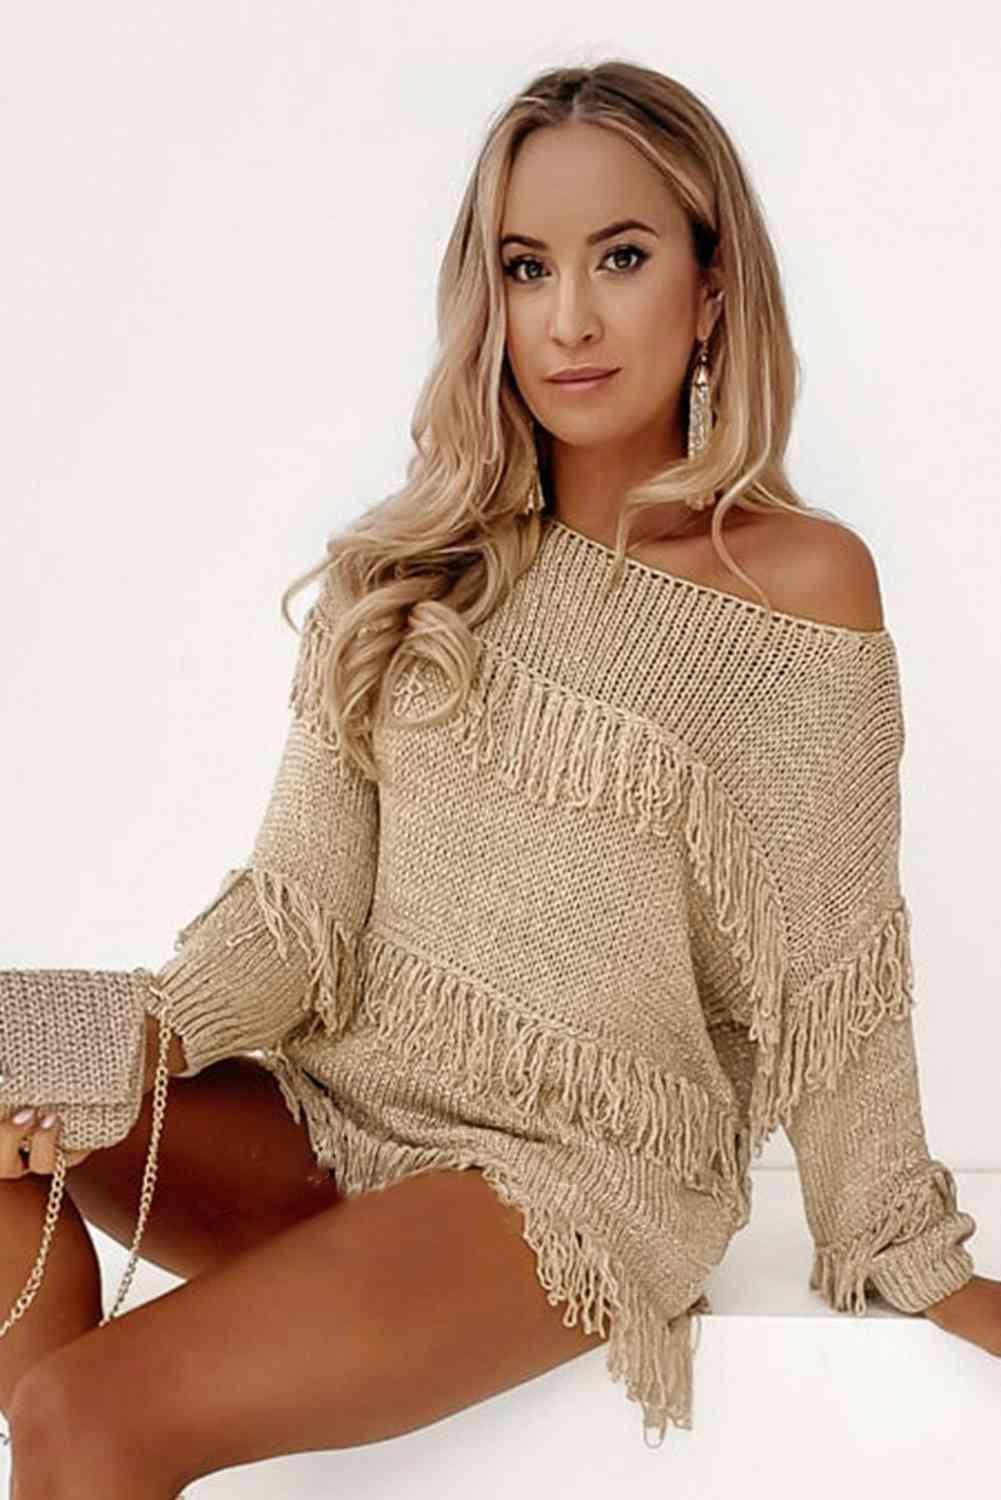 Fringe Detail Long Sleeve Sweater - Bona Fide Fashion